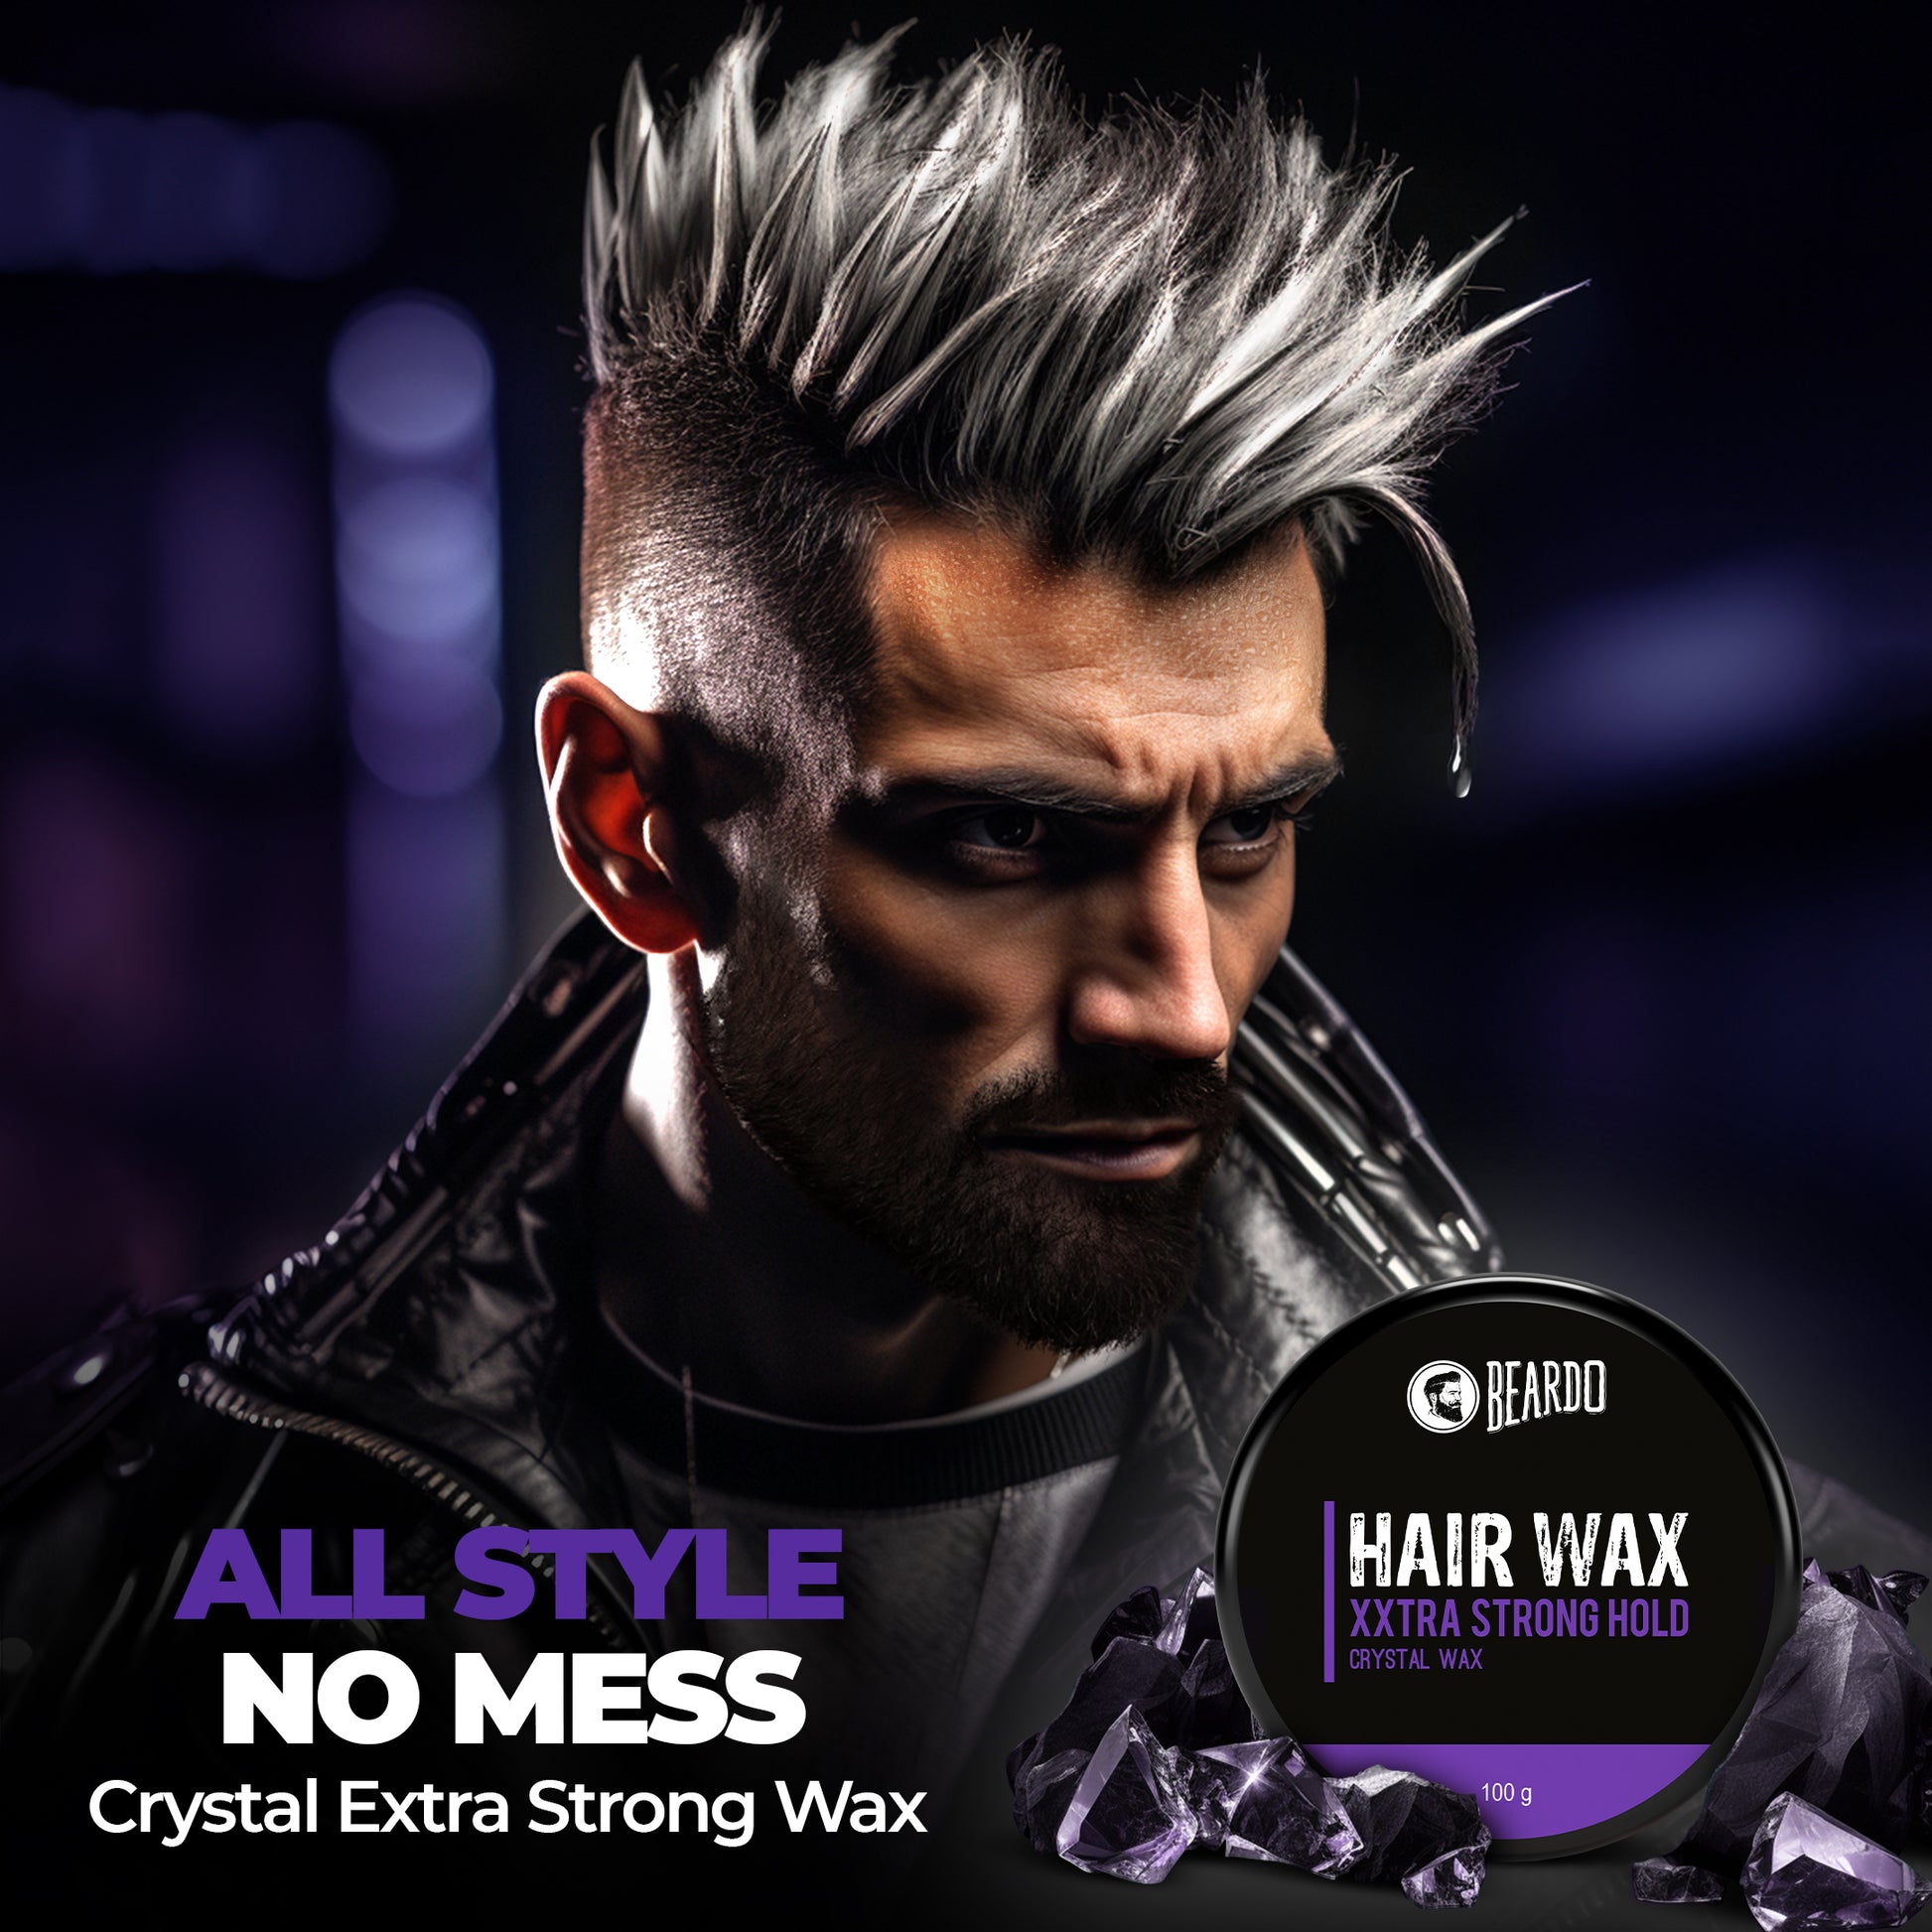 Beardo Hair Wax XXTRA STRONGHOLD Crystal Wax